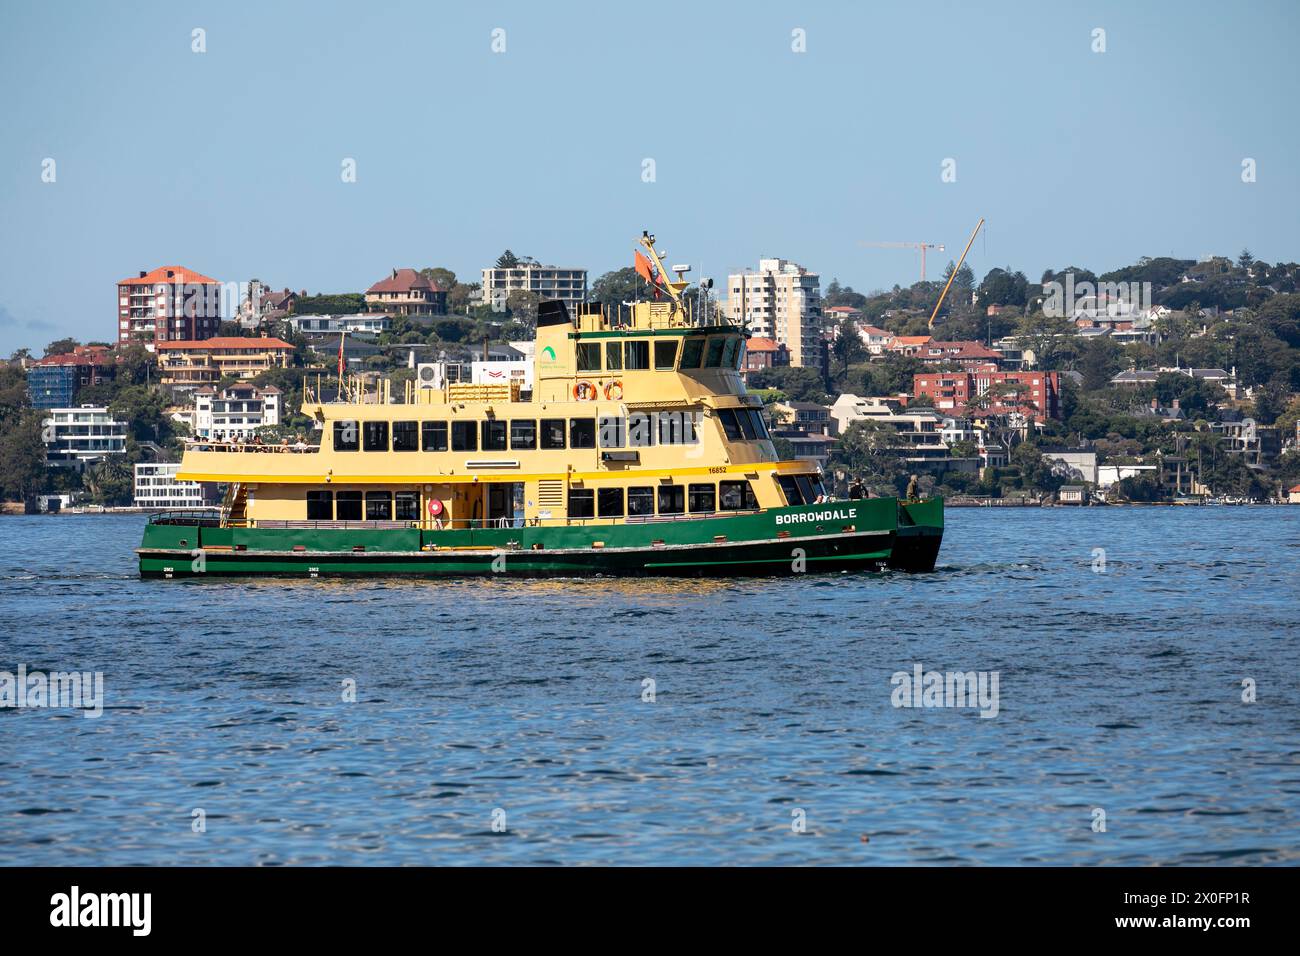 Port de Sydney et ferry de Sydney MV Borrowdale, un ferry de première classe de flotte, assure un service de transport public entre les quais de ferry dans le port de Sydney Banque D'Images